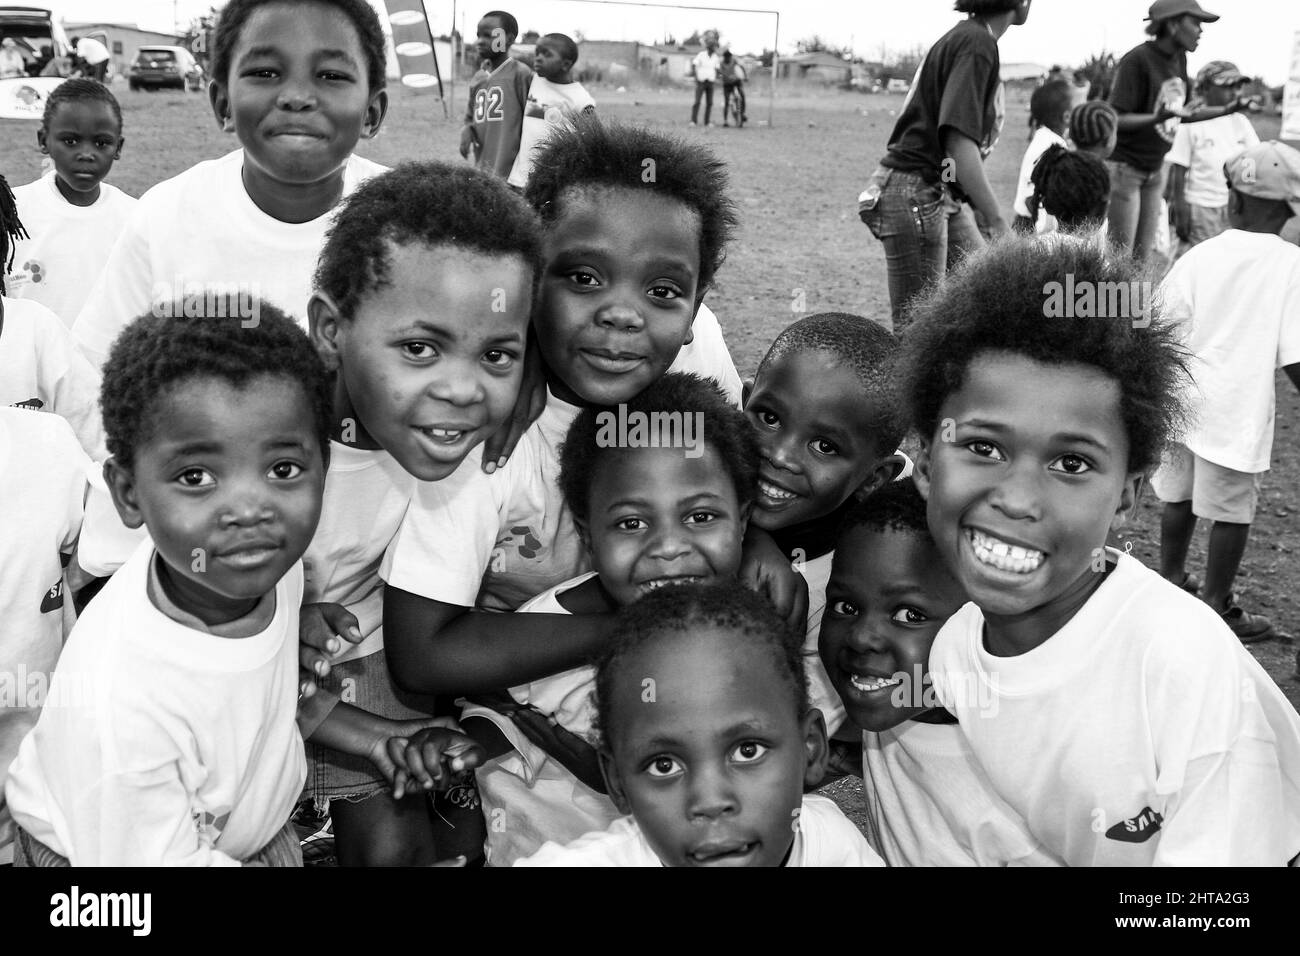 Photo en niveaux de gris de jeunes enfants africains posant pour une photo sur un terrain de jeu scolaire Banque D'Images